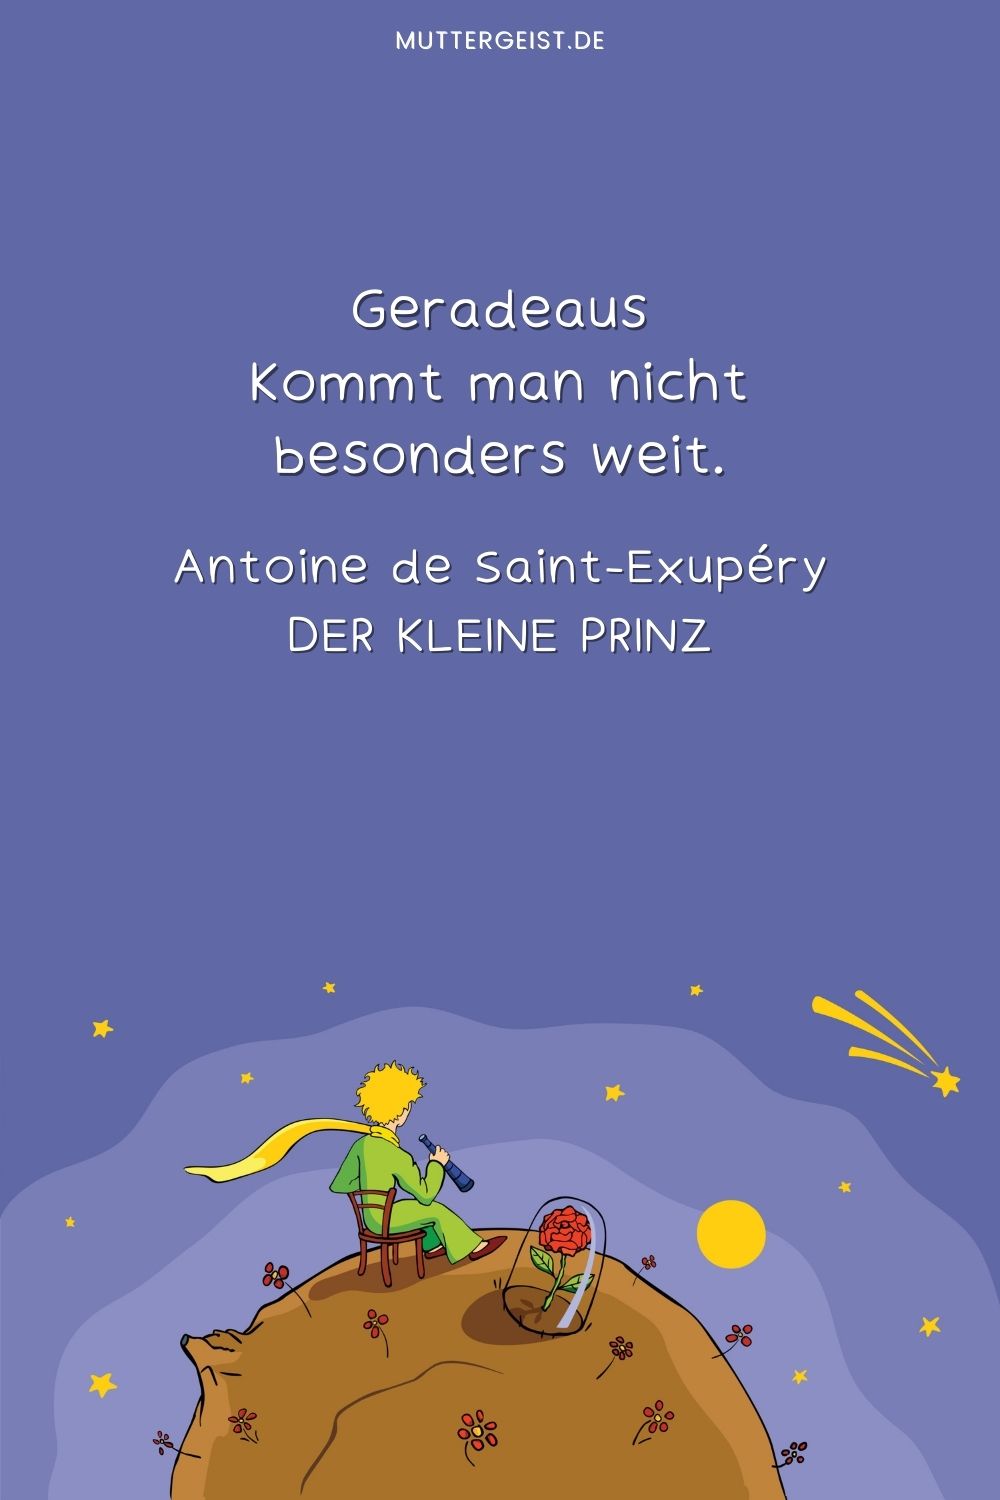 Antoine de Saint-Exupérys Worte darüber, dass man, wenn man geradeaus geht, nicht sehr weit kommt 